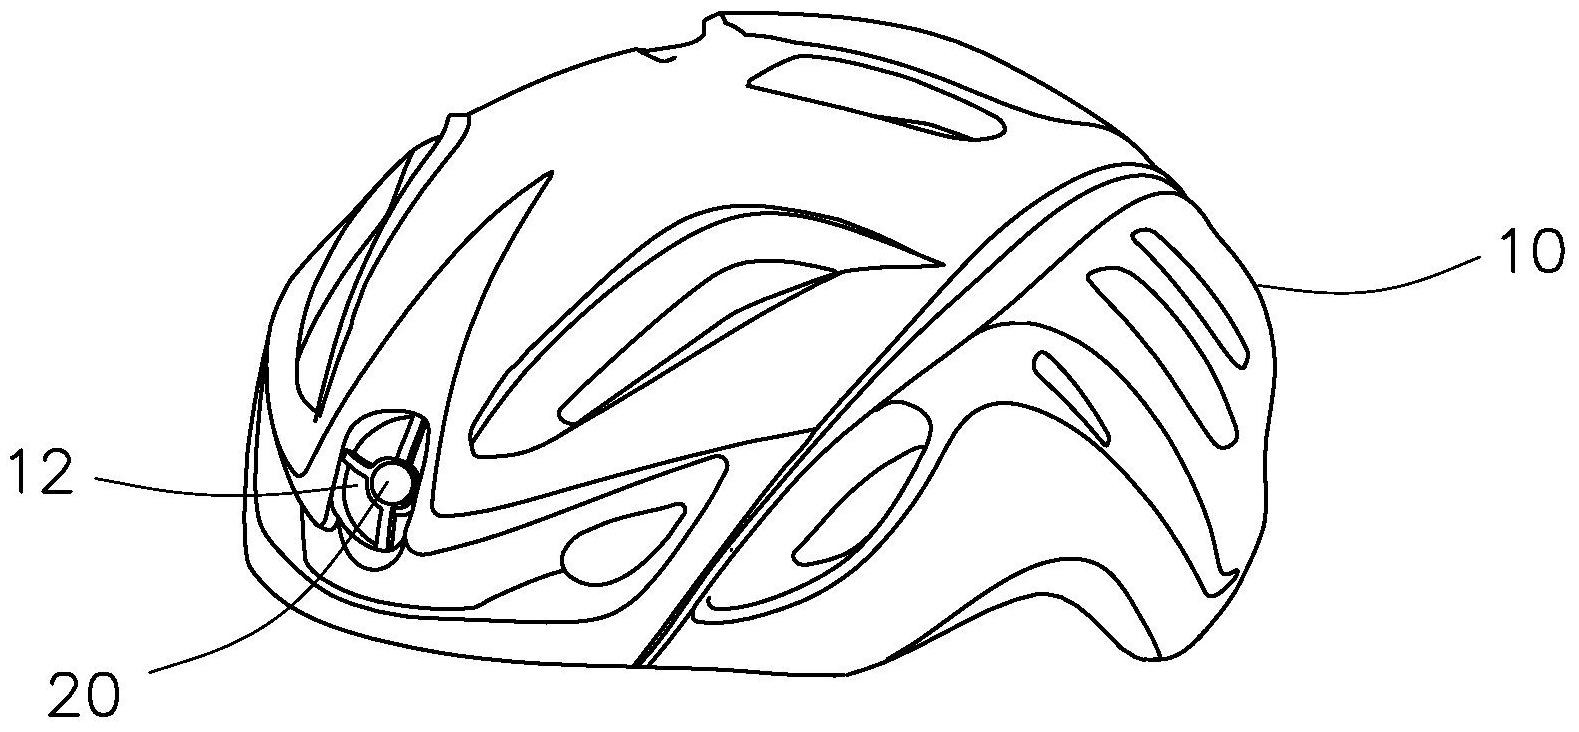 自行车头盔简笔画简单图片